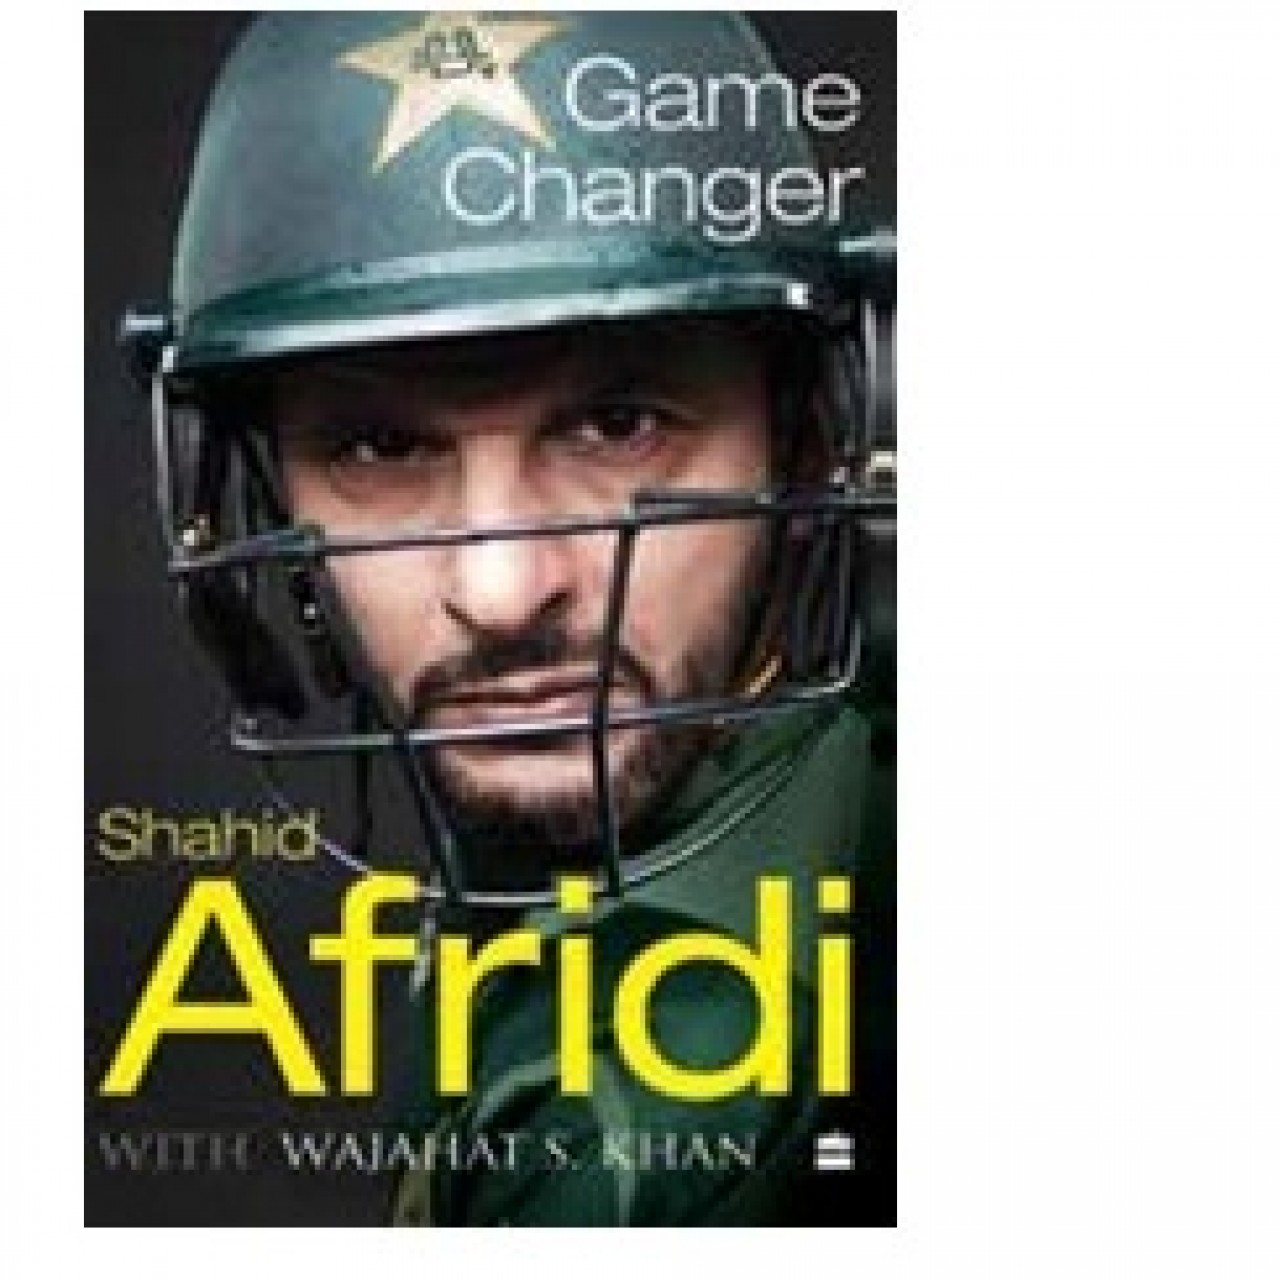 55. Game Changer: A Memoir by Shahid Afridi